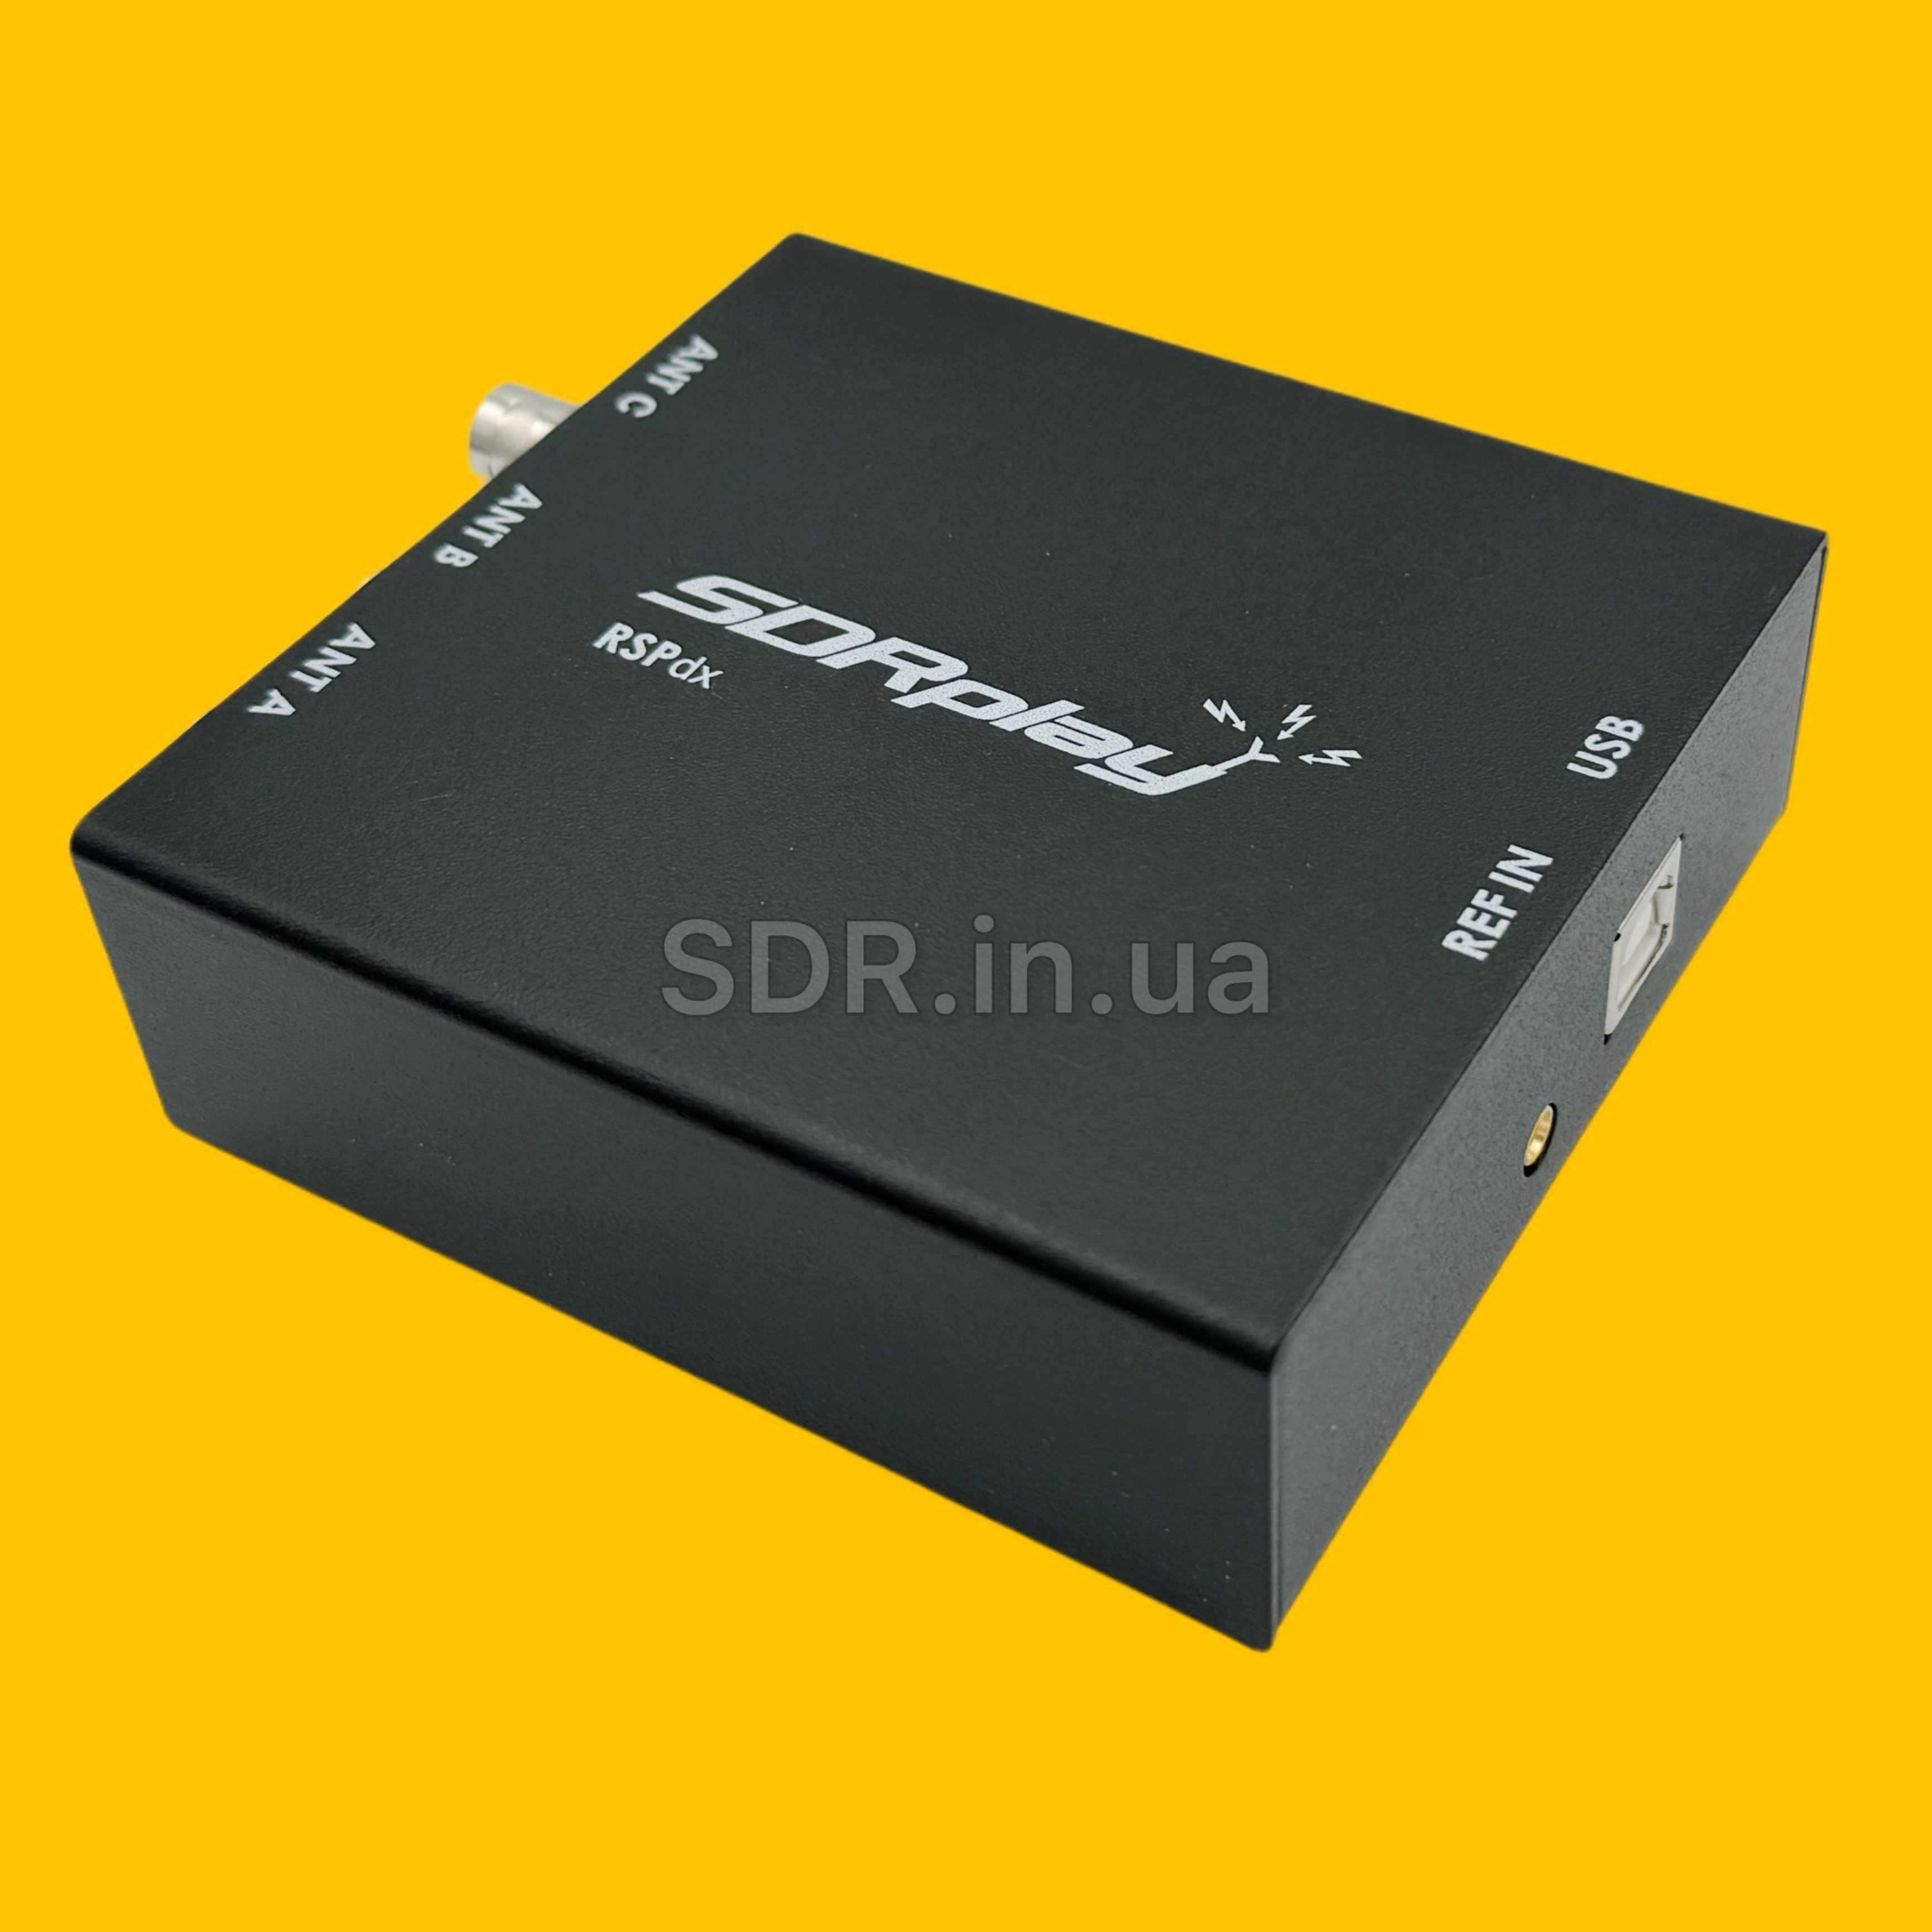 SDRplay RSPdx 14-бітний широкосмуговий радіоприймач 1кГц-2ГГц